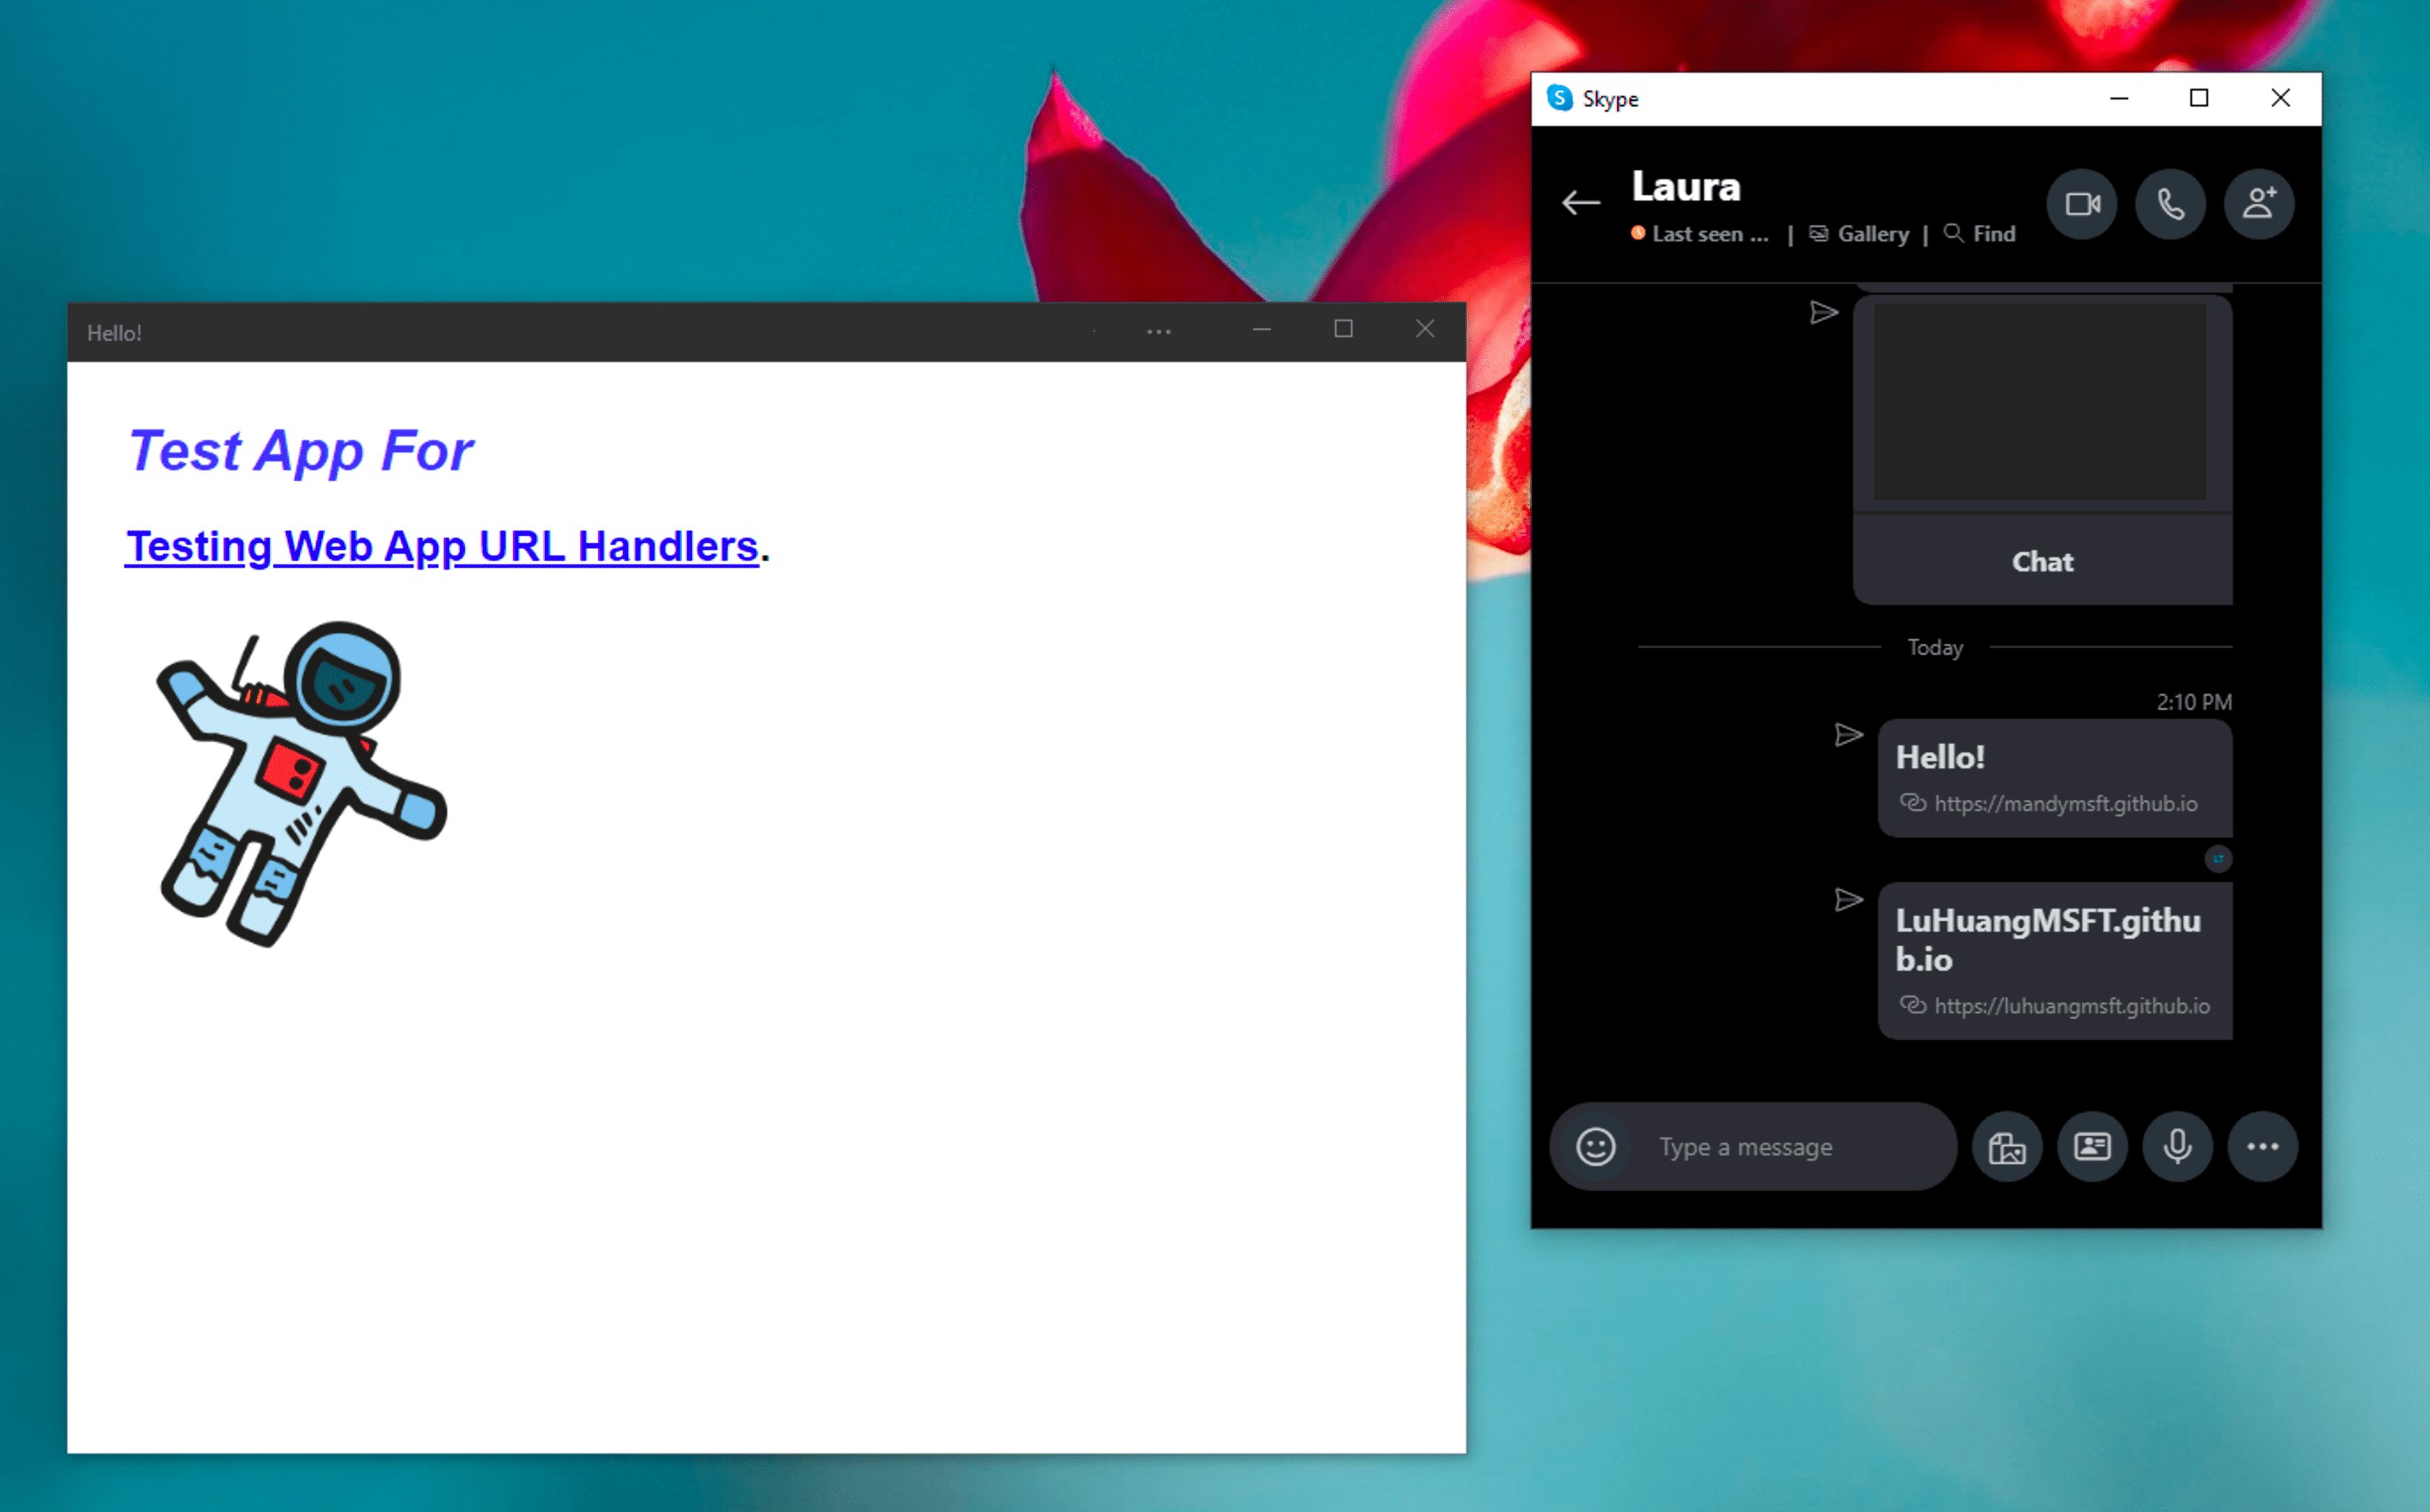 PWA yüklü demonun yanında Windows Skype anında mesajlaşma uygulaması, Skype sohbet mesajında gösterilen bir bağlantı tıklandıktan sonra bağımsız modda açılır.